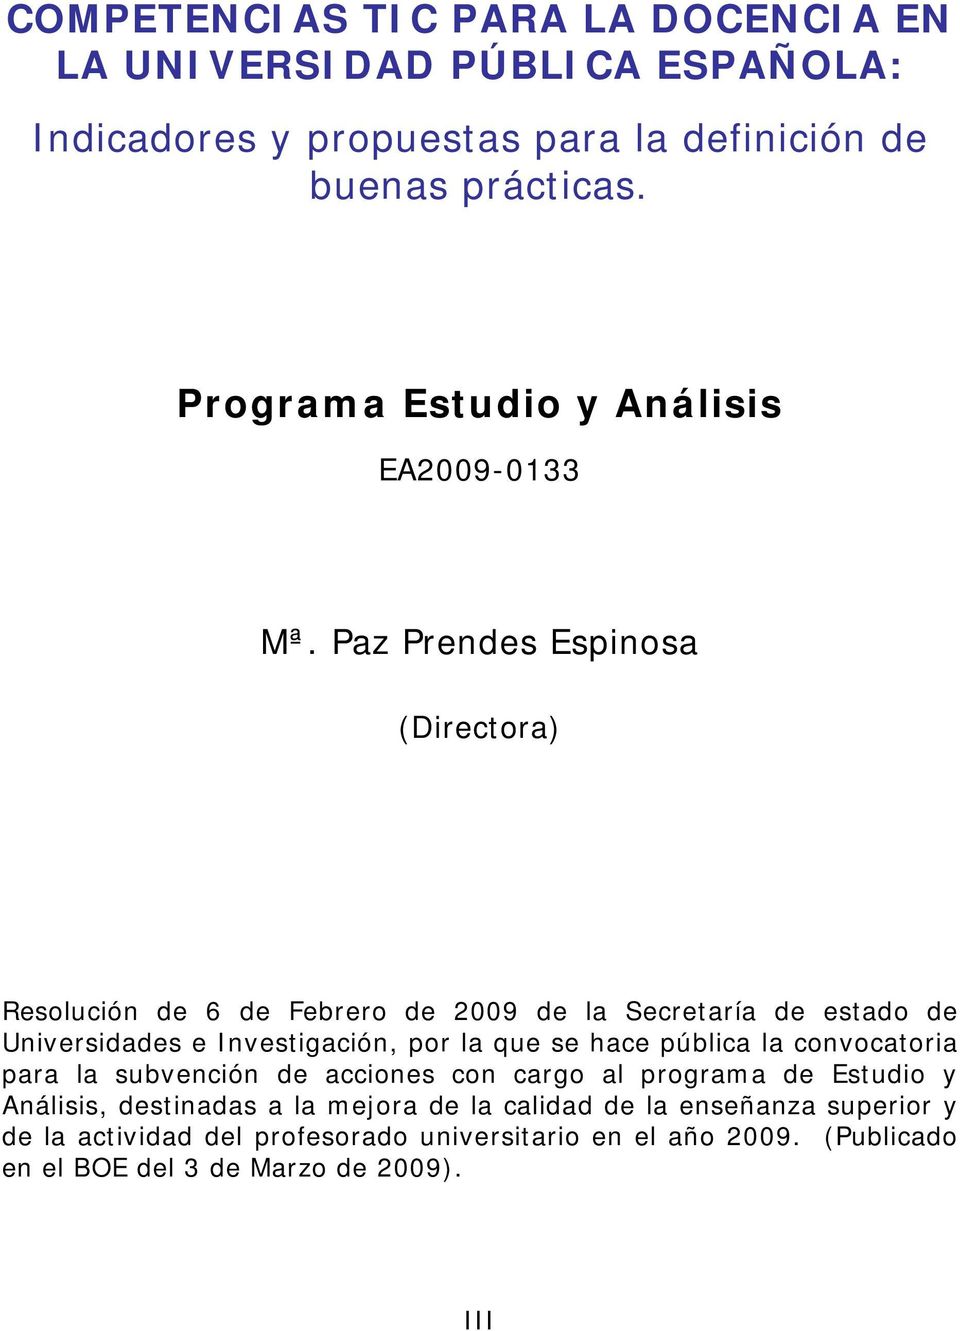 Paz Prendes Espinosa (Directora) Resolución de 6 de Febrero de 2009 de la Secretaría de estado de Universidades e Investigación, por la que se hace